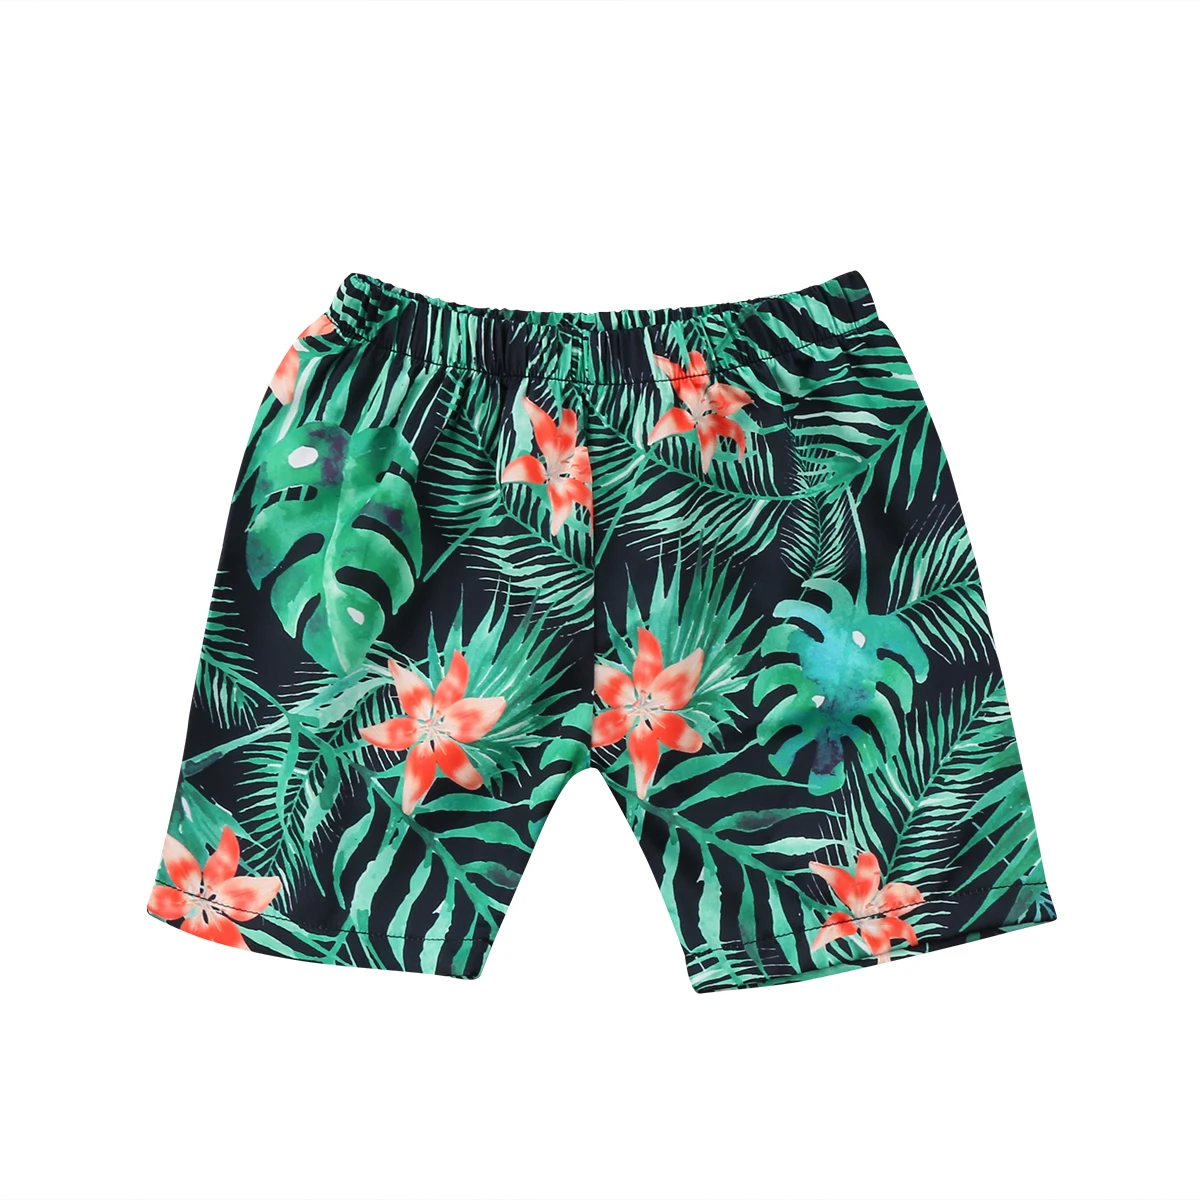 Лидер продаж; летние шорты для маленьких мальчиков; пляжные шорты с принтом листьев; спортивные брюки; пляжная одежда; купальники - Цвет: Зеленый